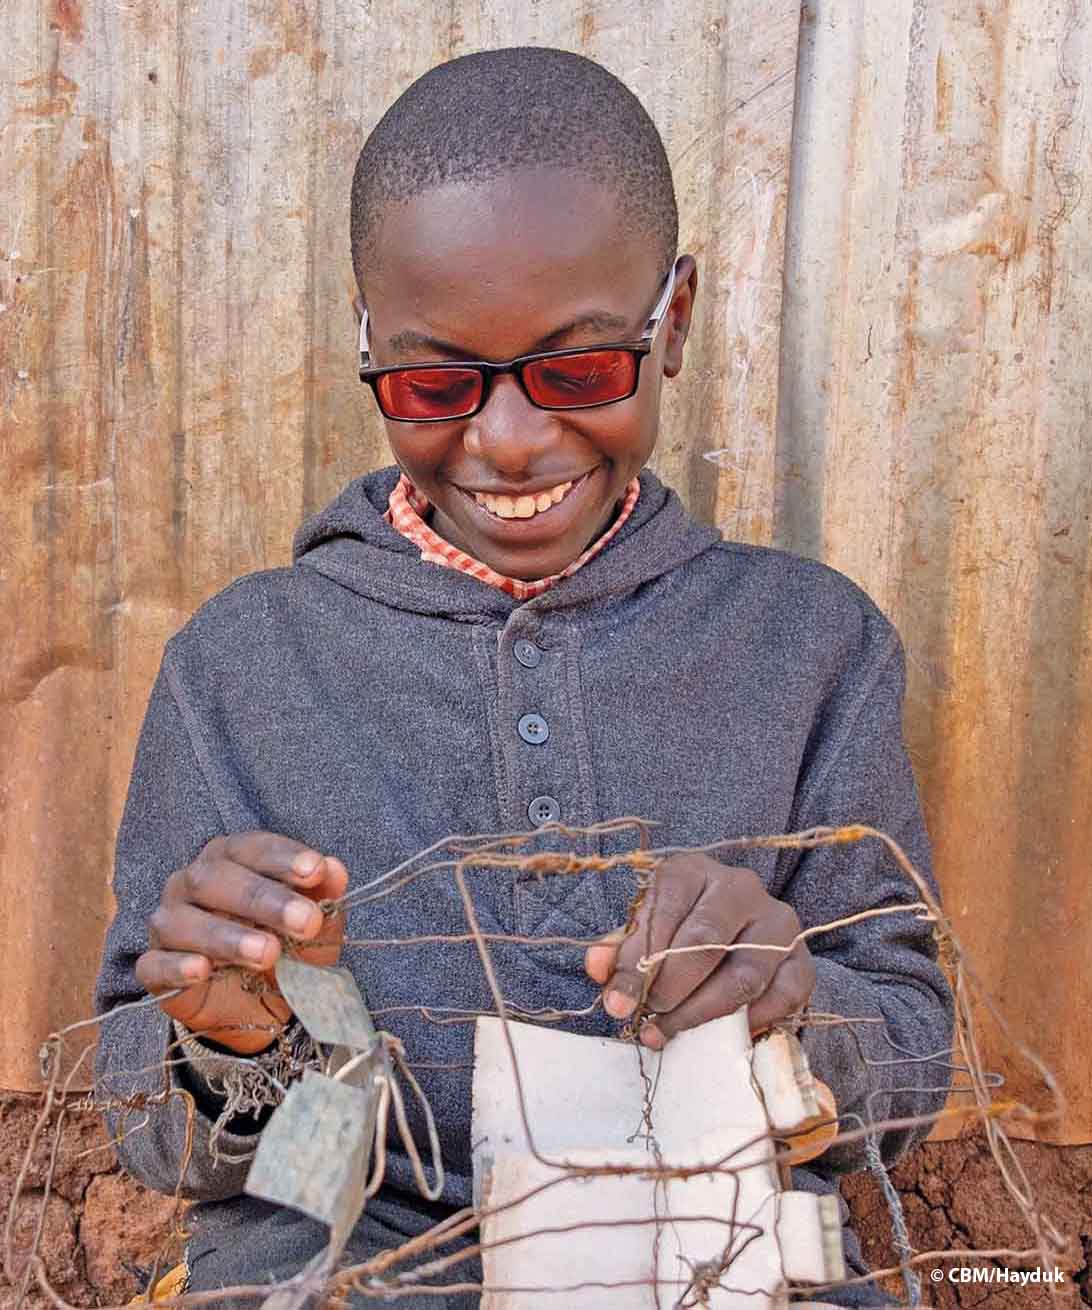 Ein Junge aus Kenia, der eine UV-filternde Sonnenbrille trägt, bastelt auf seinem Schoss ein Auto aus altem Draht mit zwei Sitzen und Rädern aus Verschlüssen von Petflaschen.